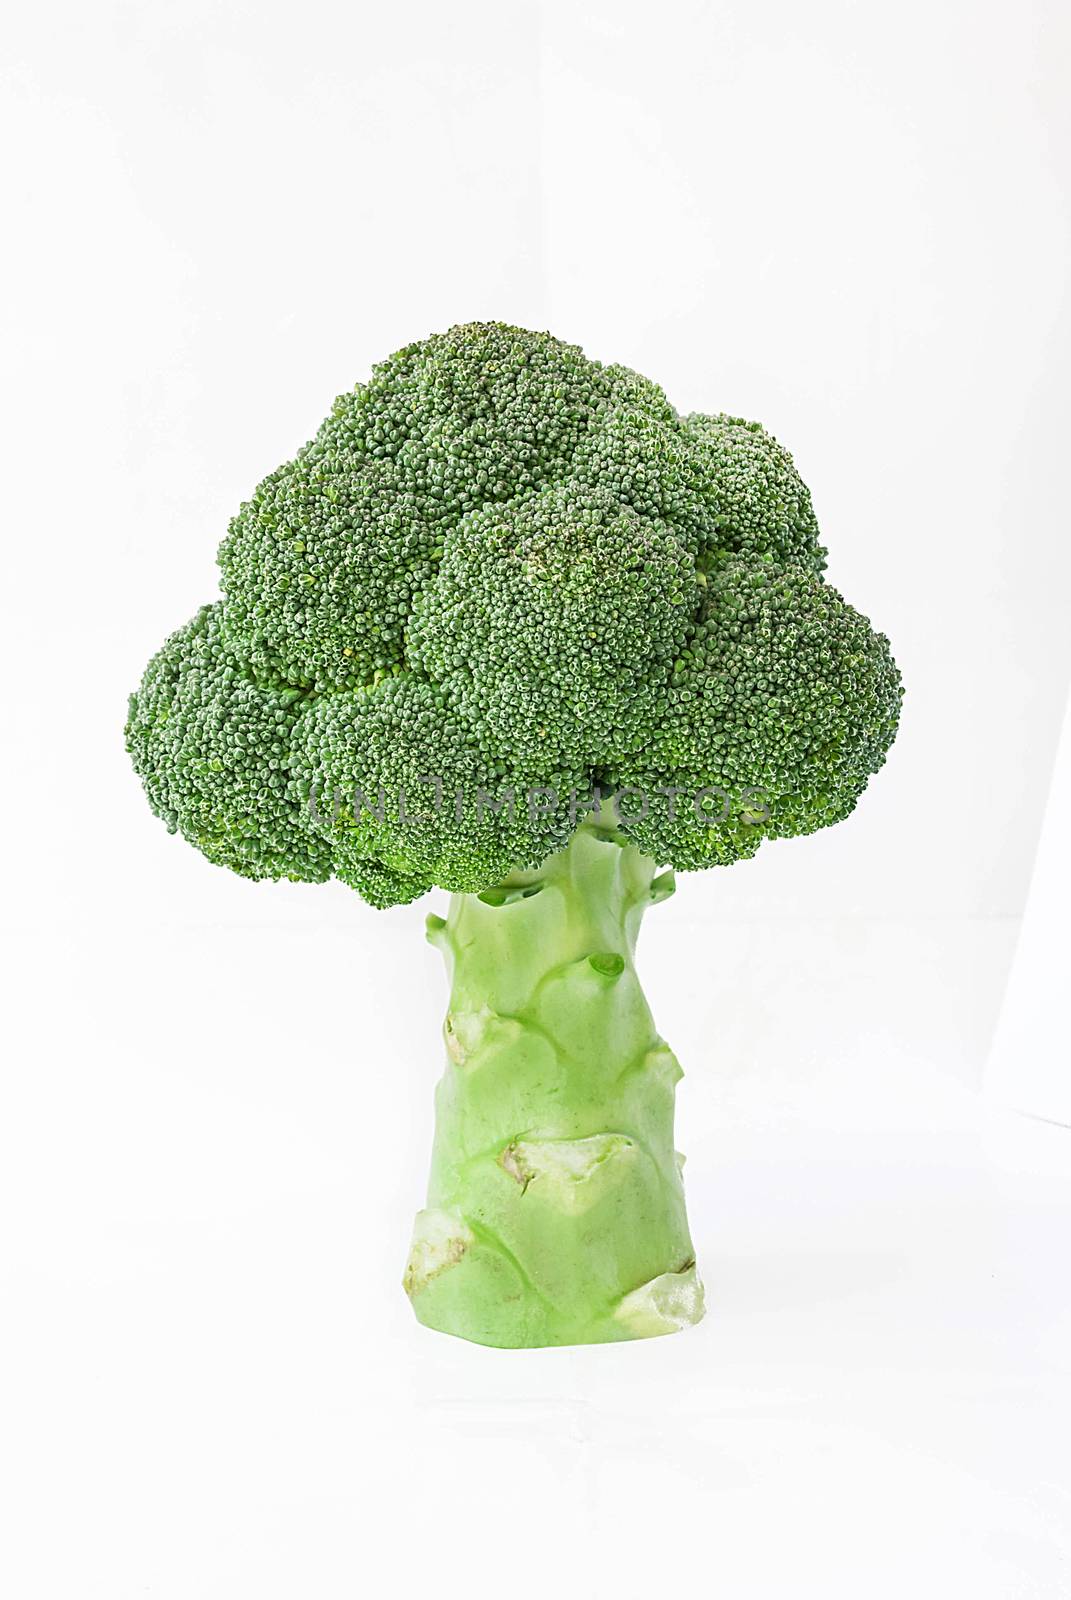 big tree shape of fresh broccoli on white background